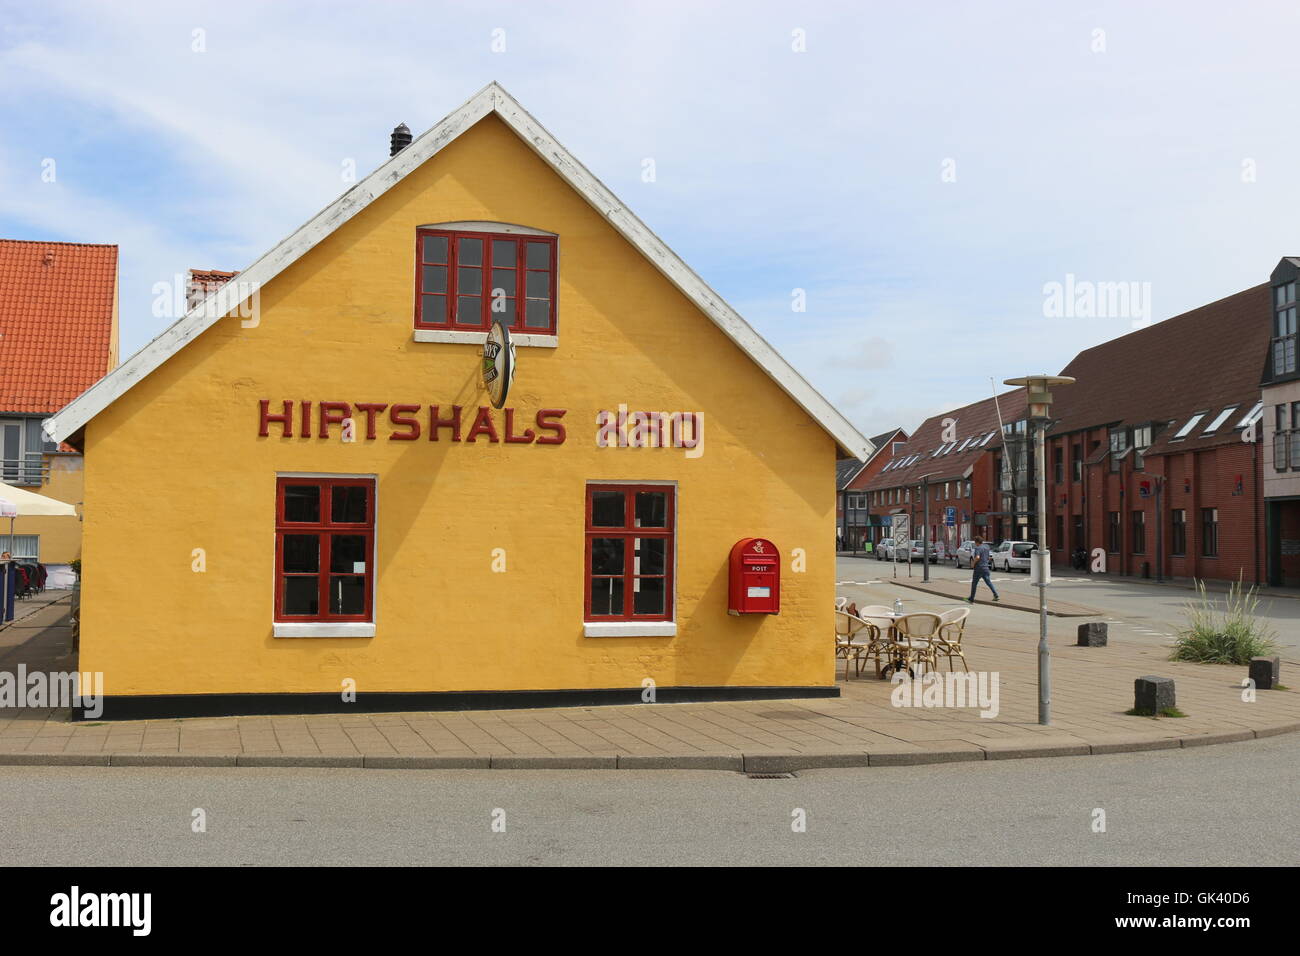 Ein traditioneller Gasthof oder Kro in Hirtshals, Dänemark. Hirtshals ist eine wichtige Hafenstadt im Norden Stadt in Nordjütland. Skandinavien. Stockfoto